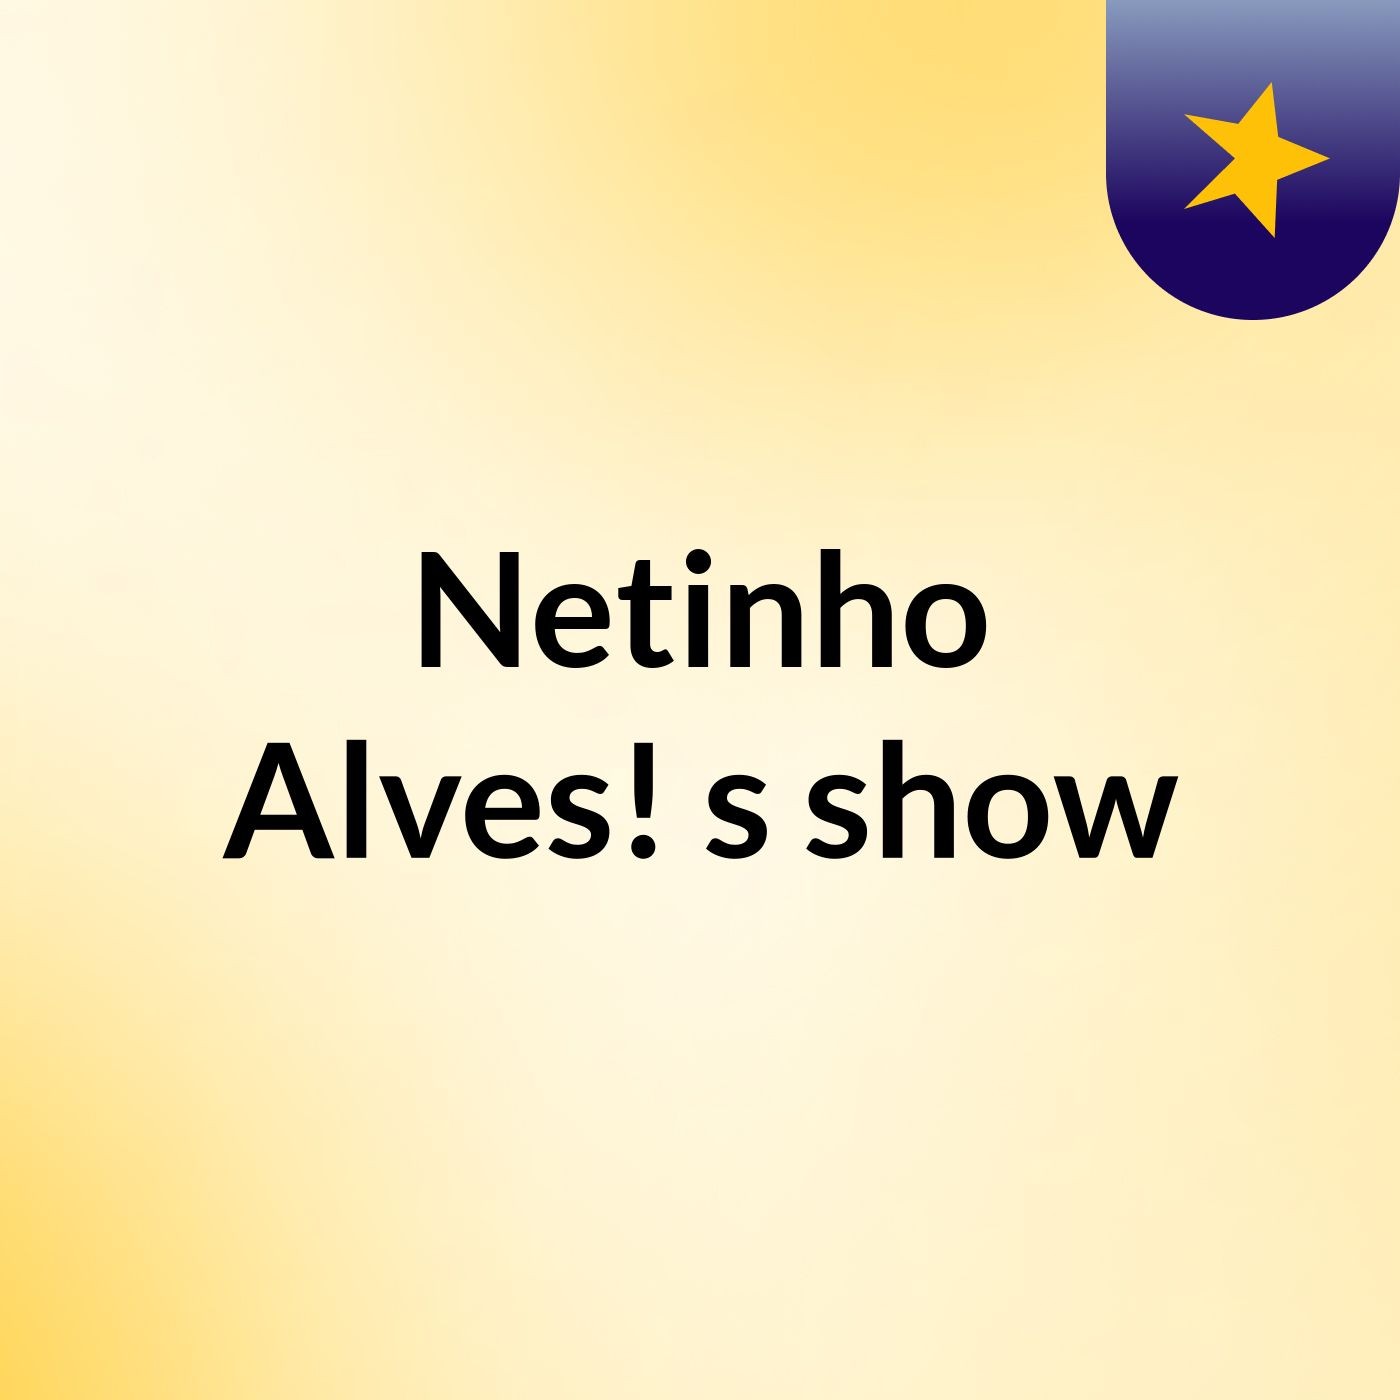 Netinho Alves!'s show